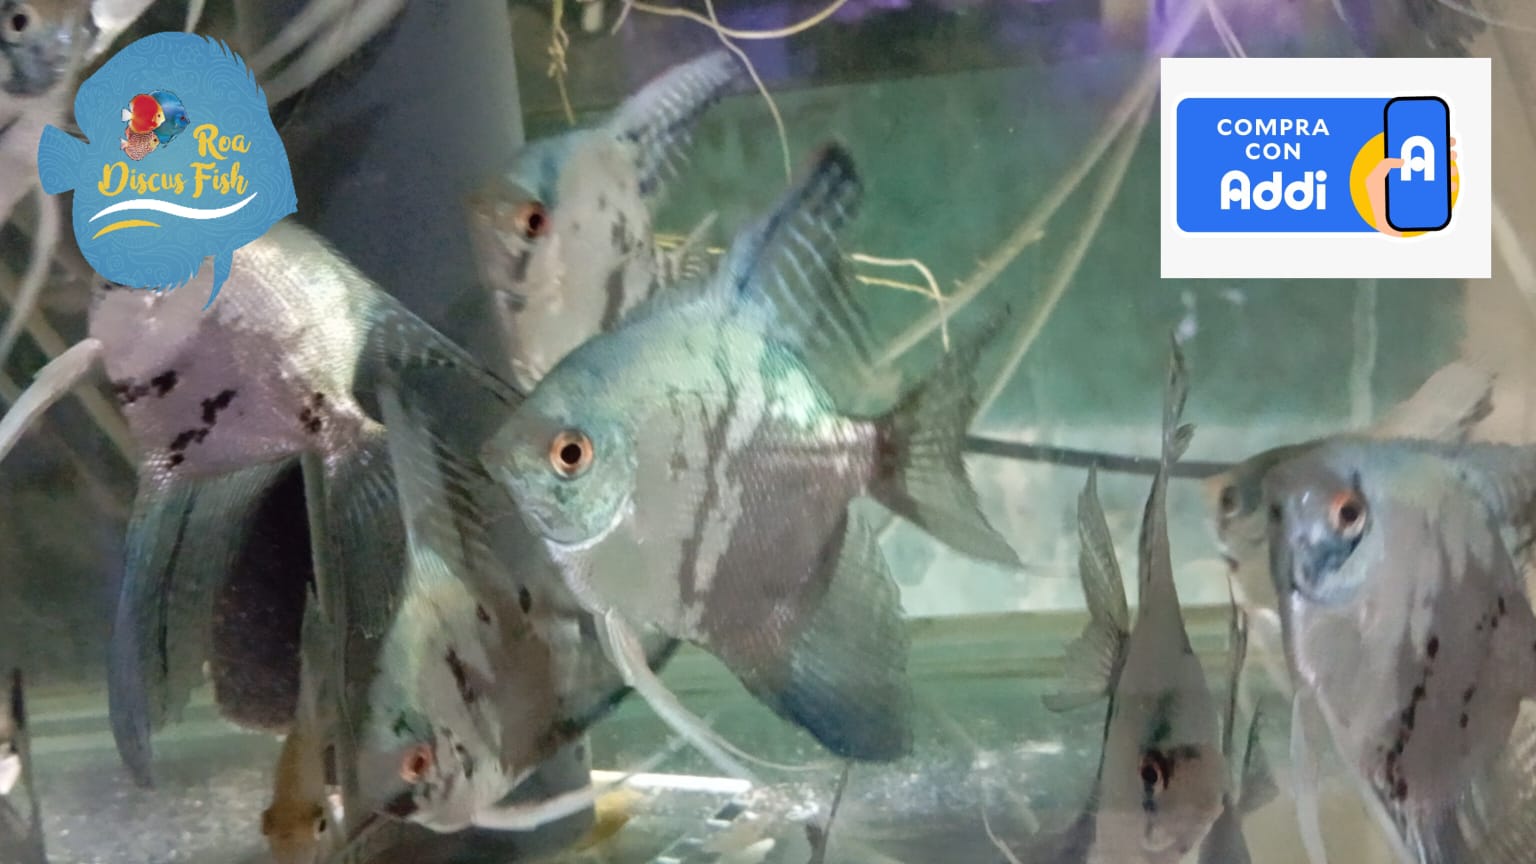 Escalares Pinoy - Discus Roa Fish